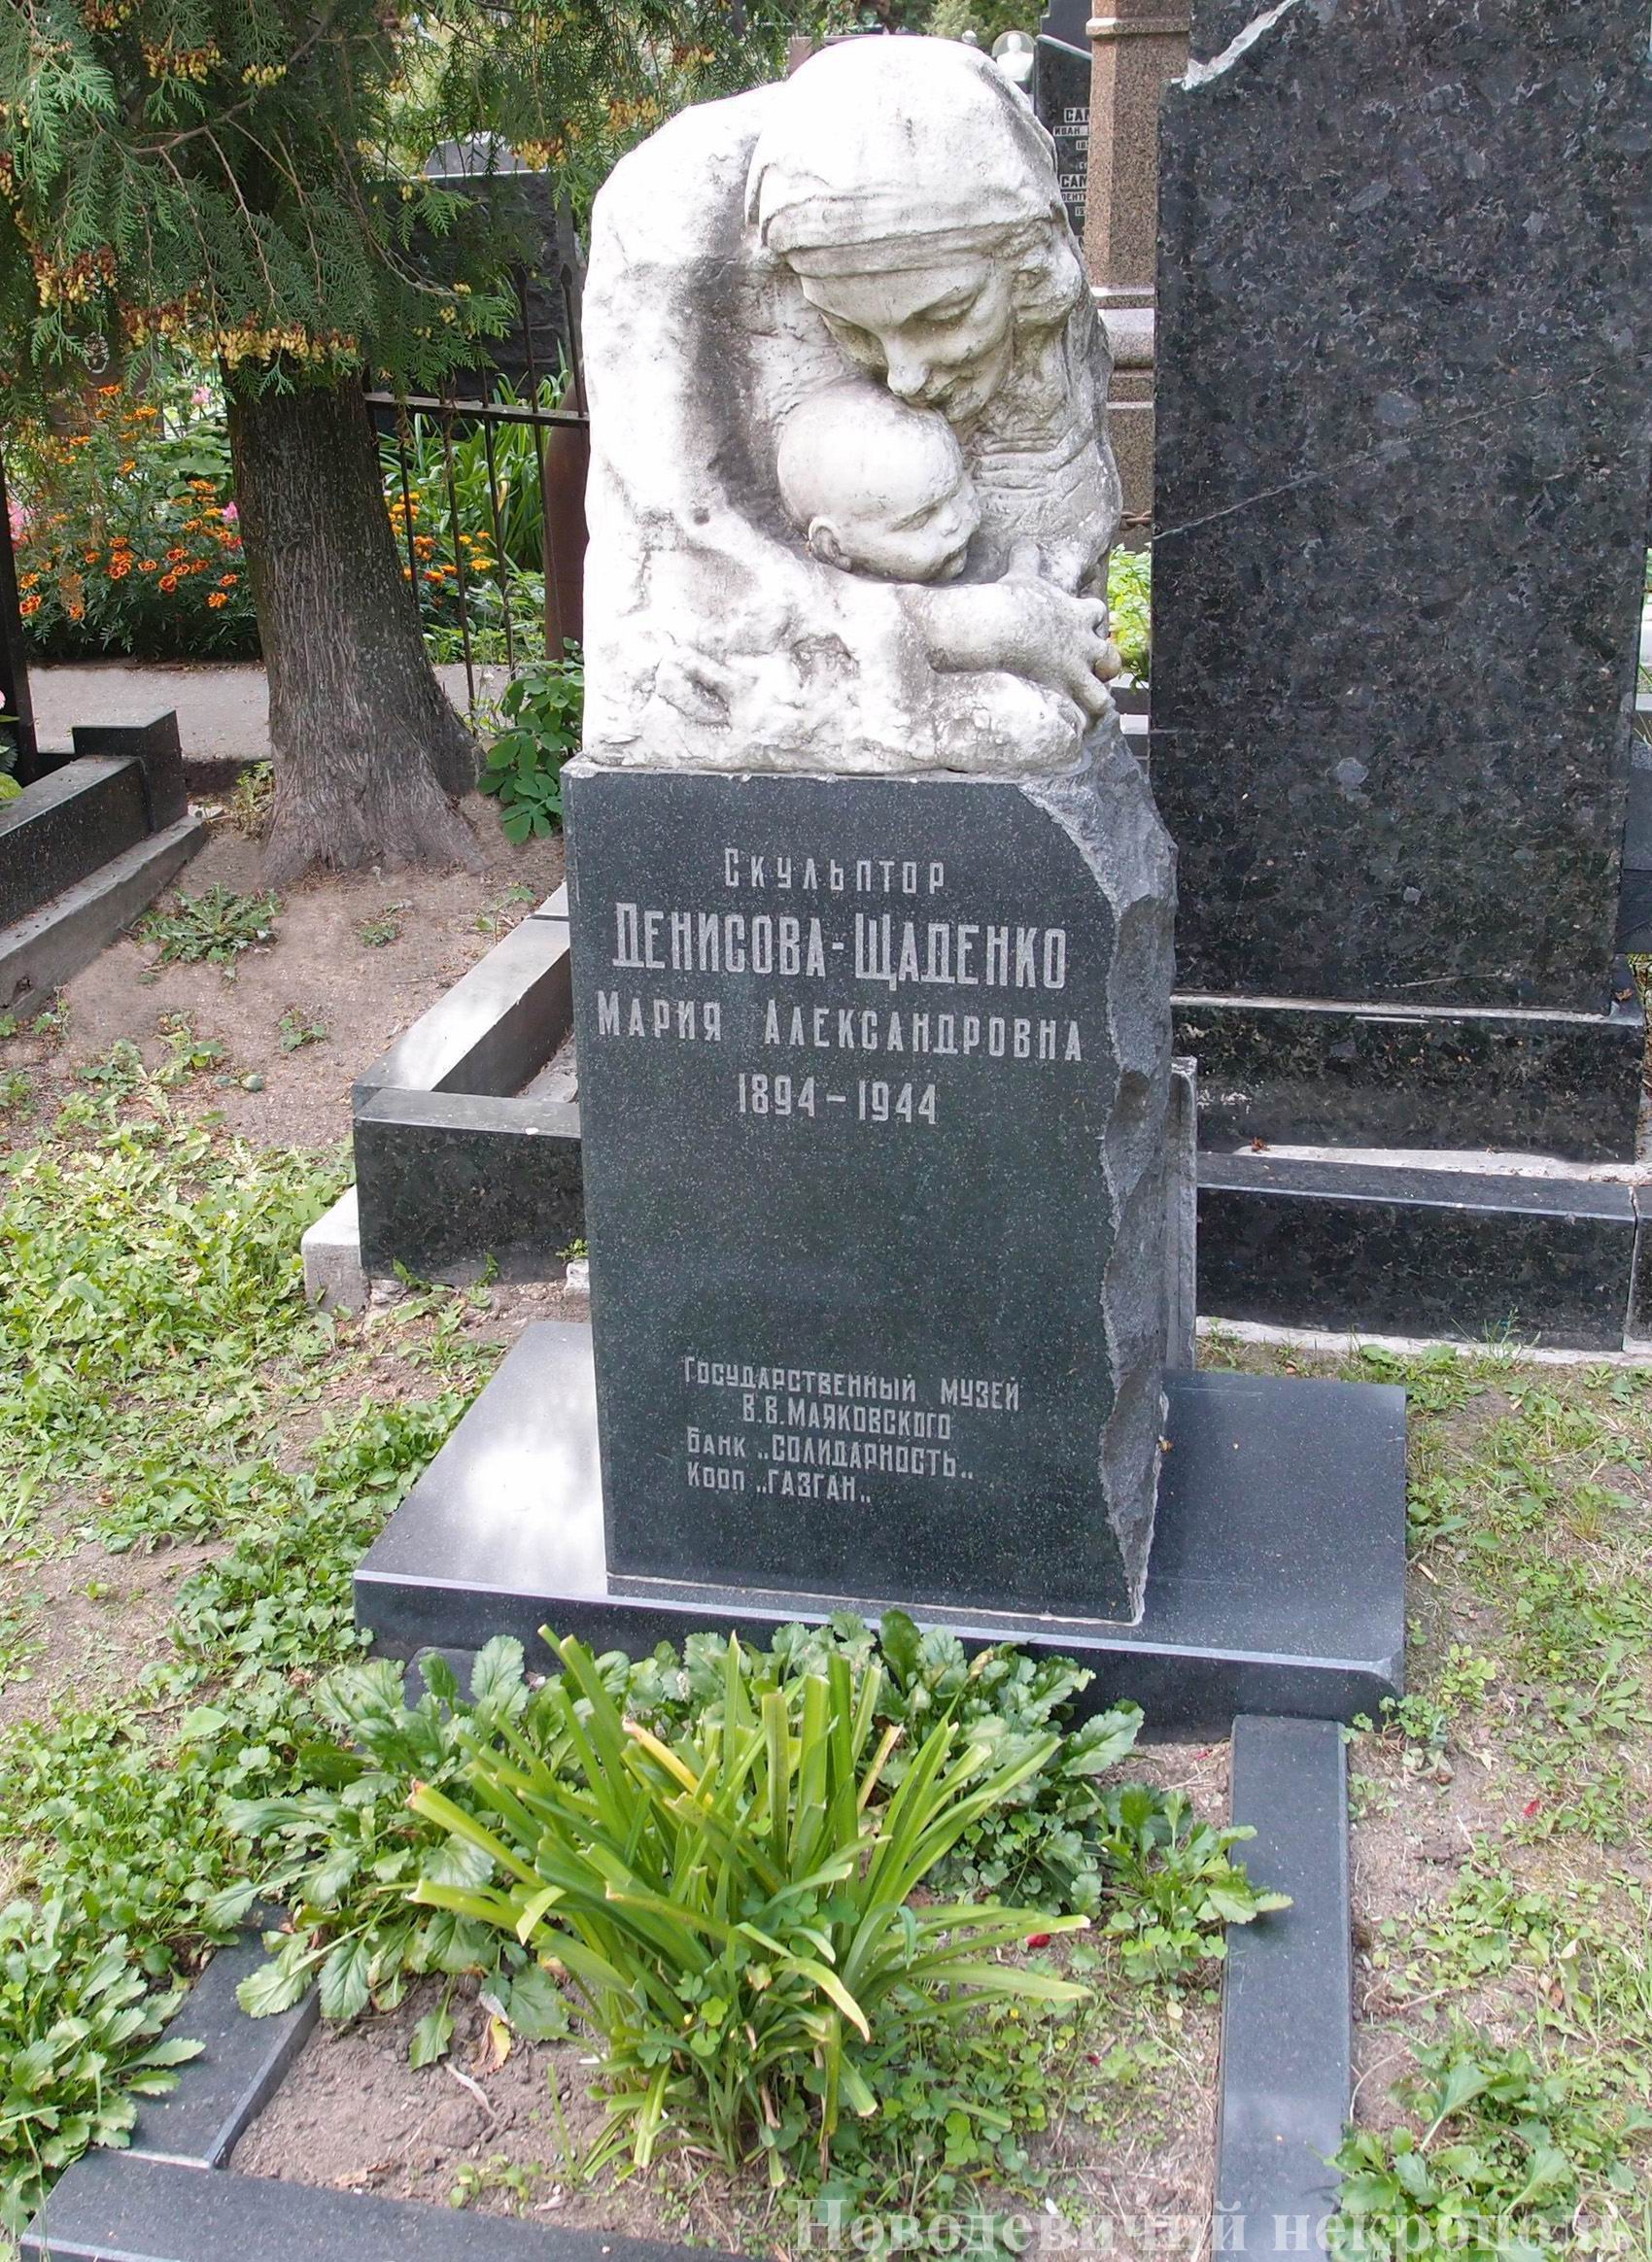 Памятник на могиле Денисовой-Щаденко М.А. (1894–1944), скульптура «Материнство» М.Денисовой-Щаденко, на Новодевичьем кладбище (4–9–10).